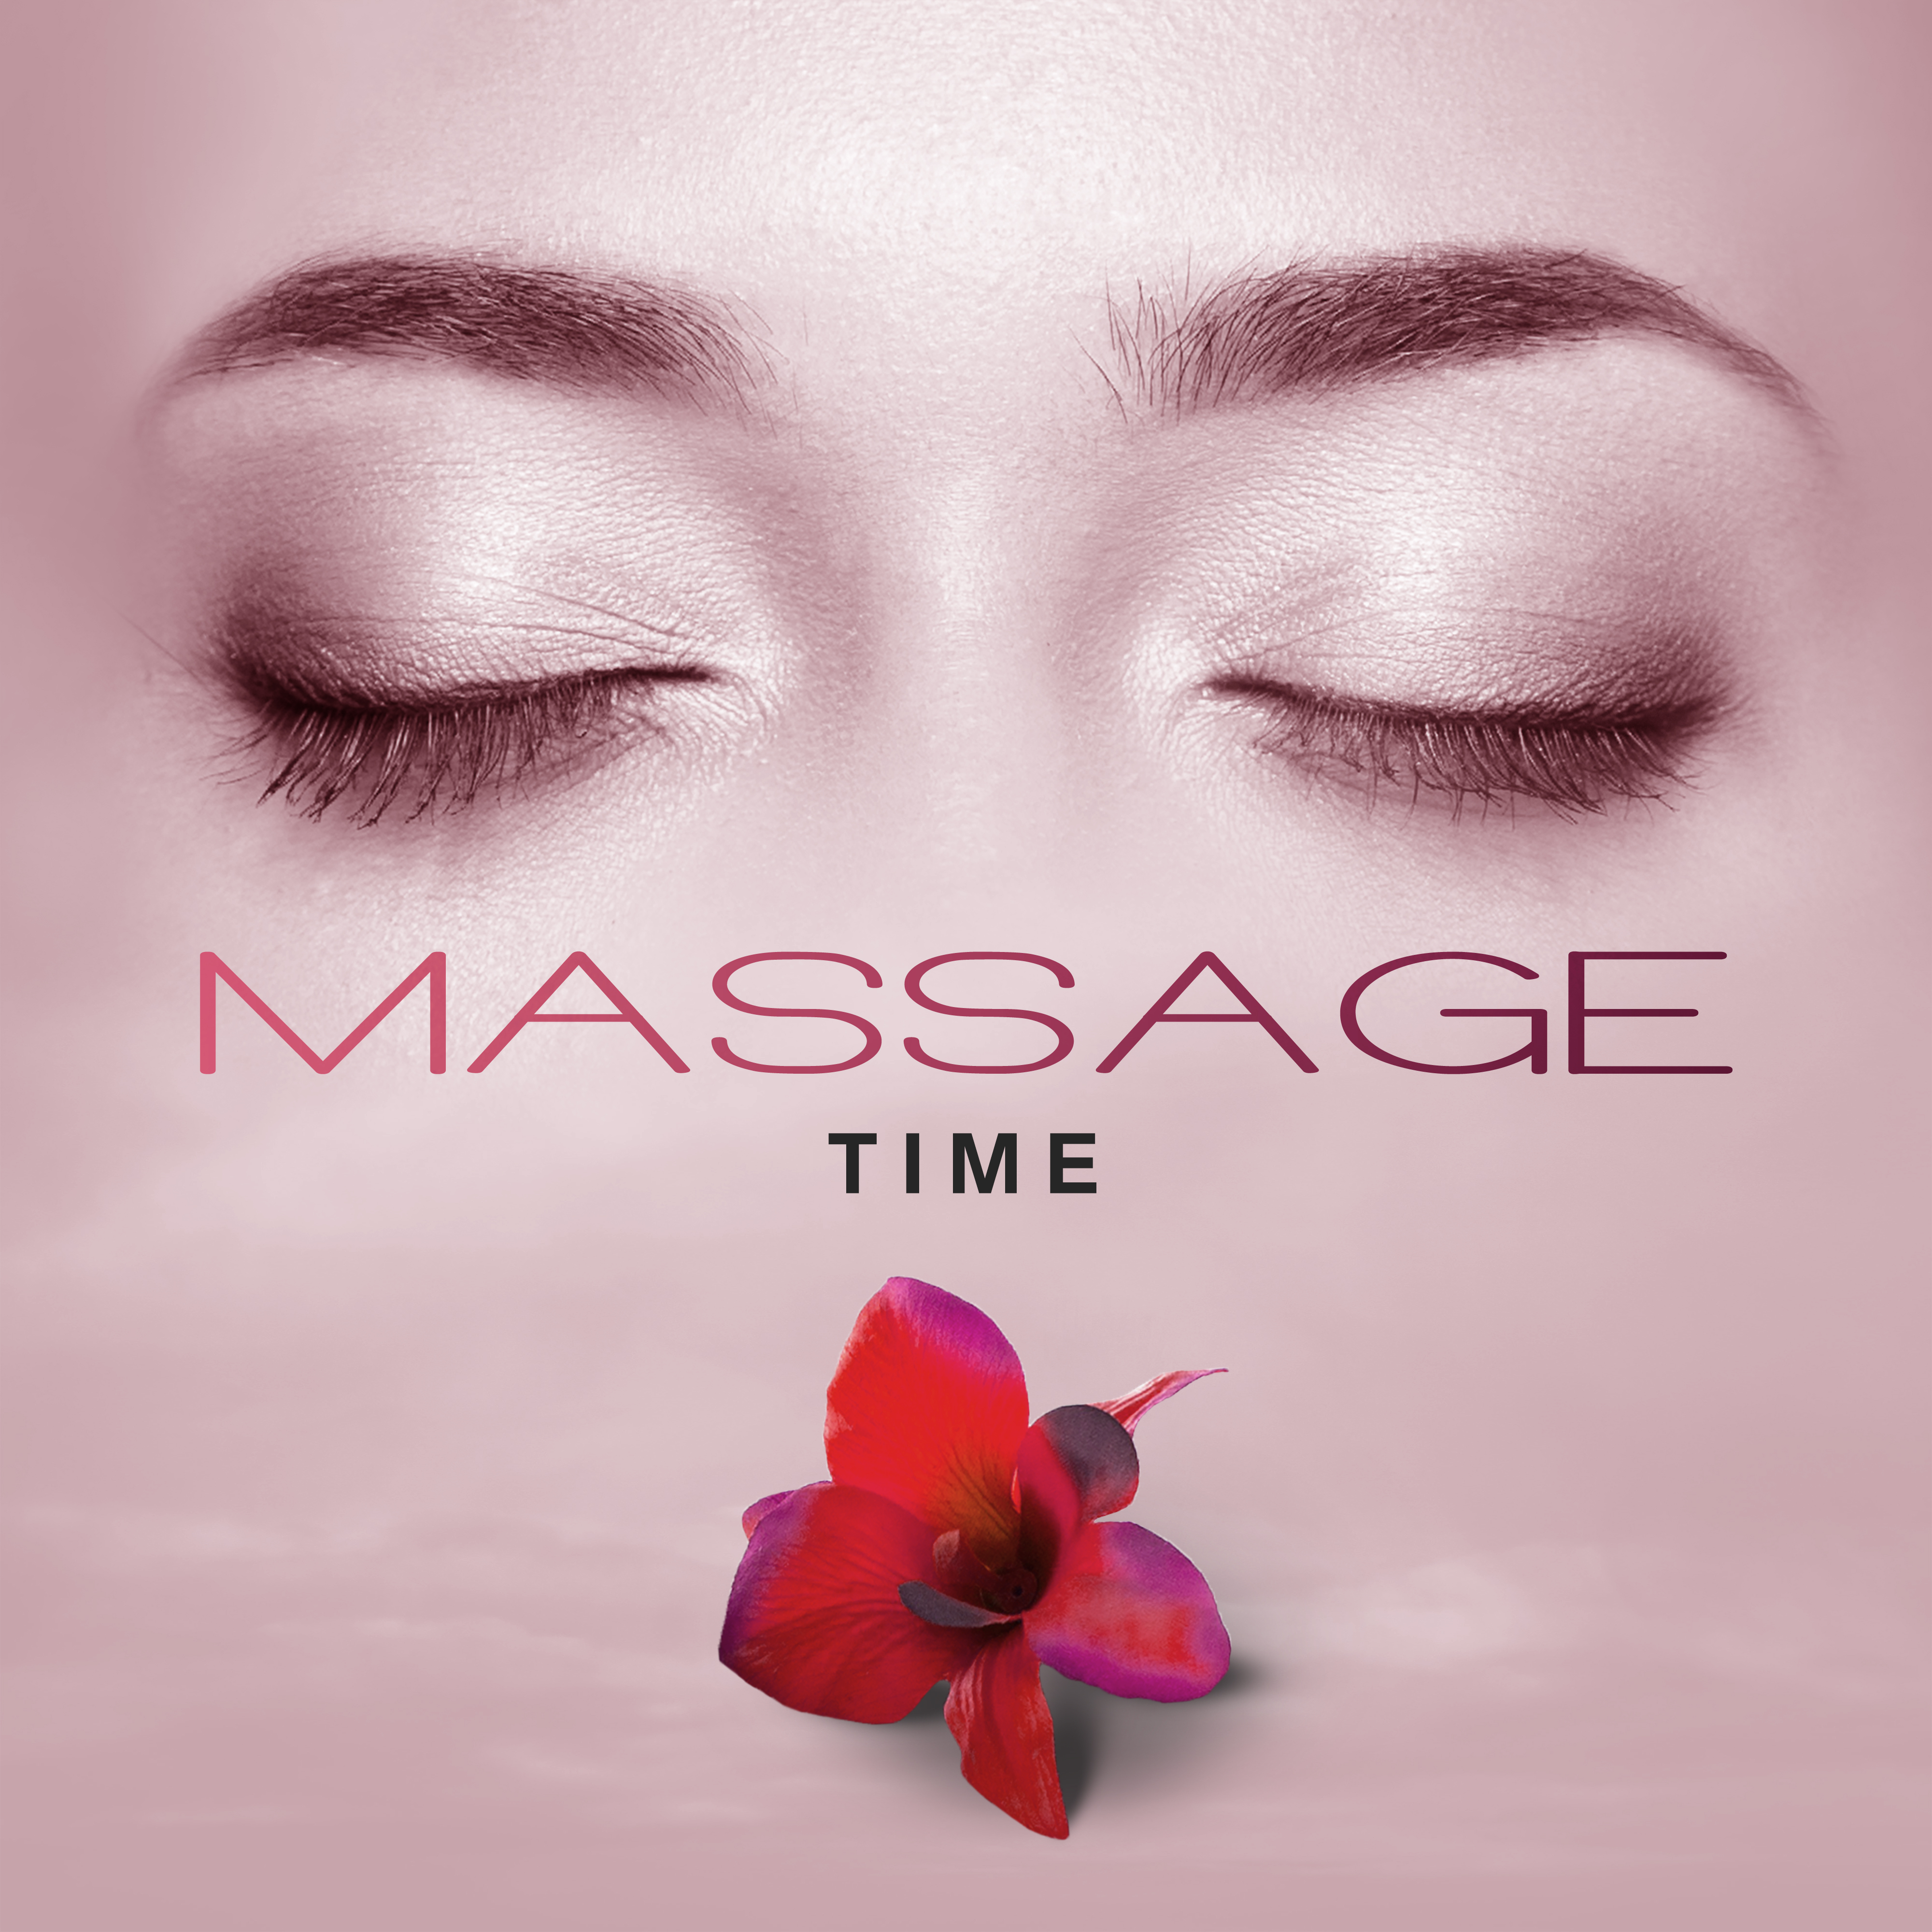 Massage Time  Relaxing Music for Massage, Beauty Treatments, Wellness, Spa, Rest, Zen